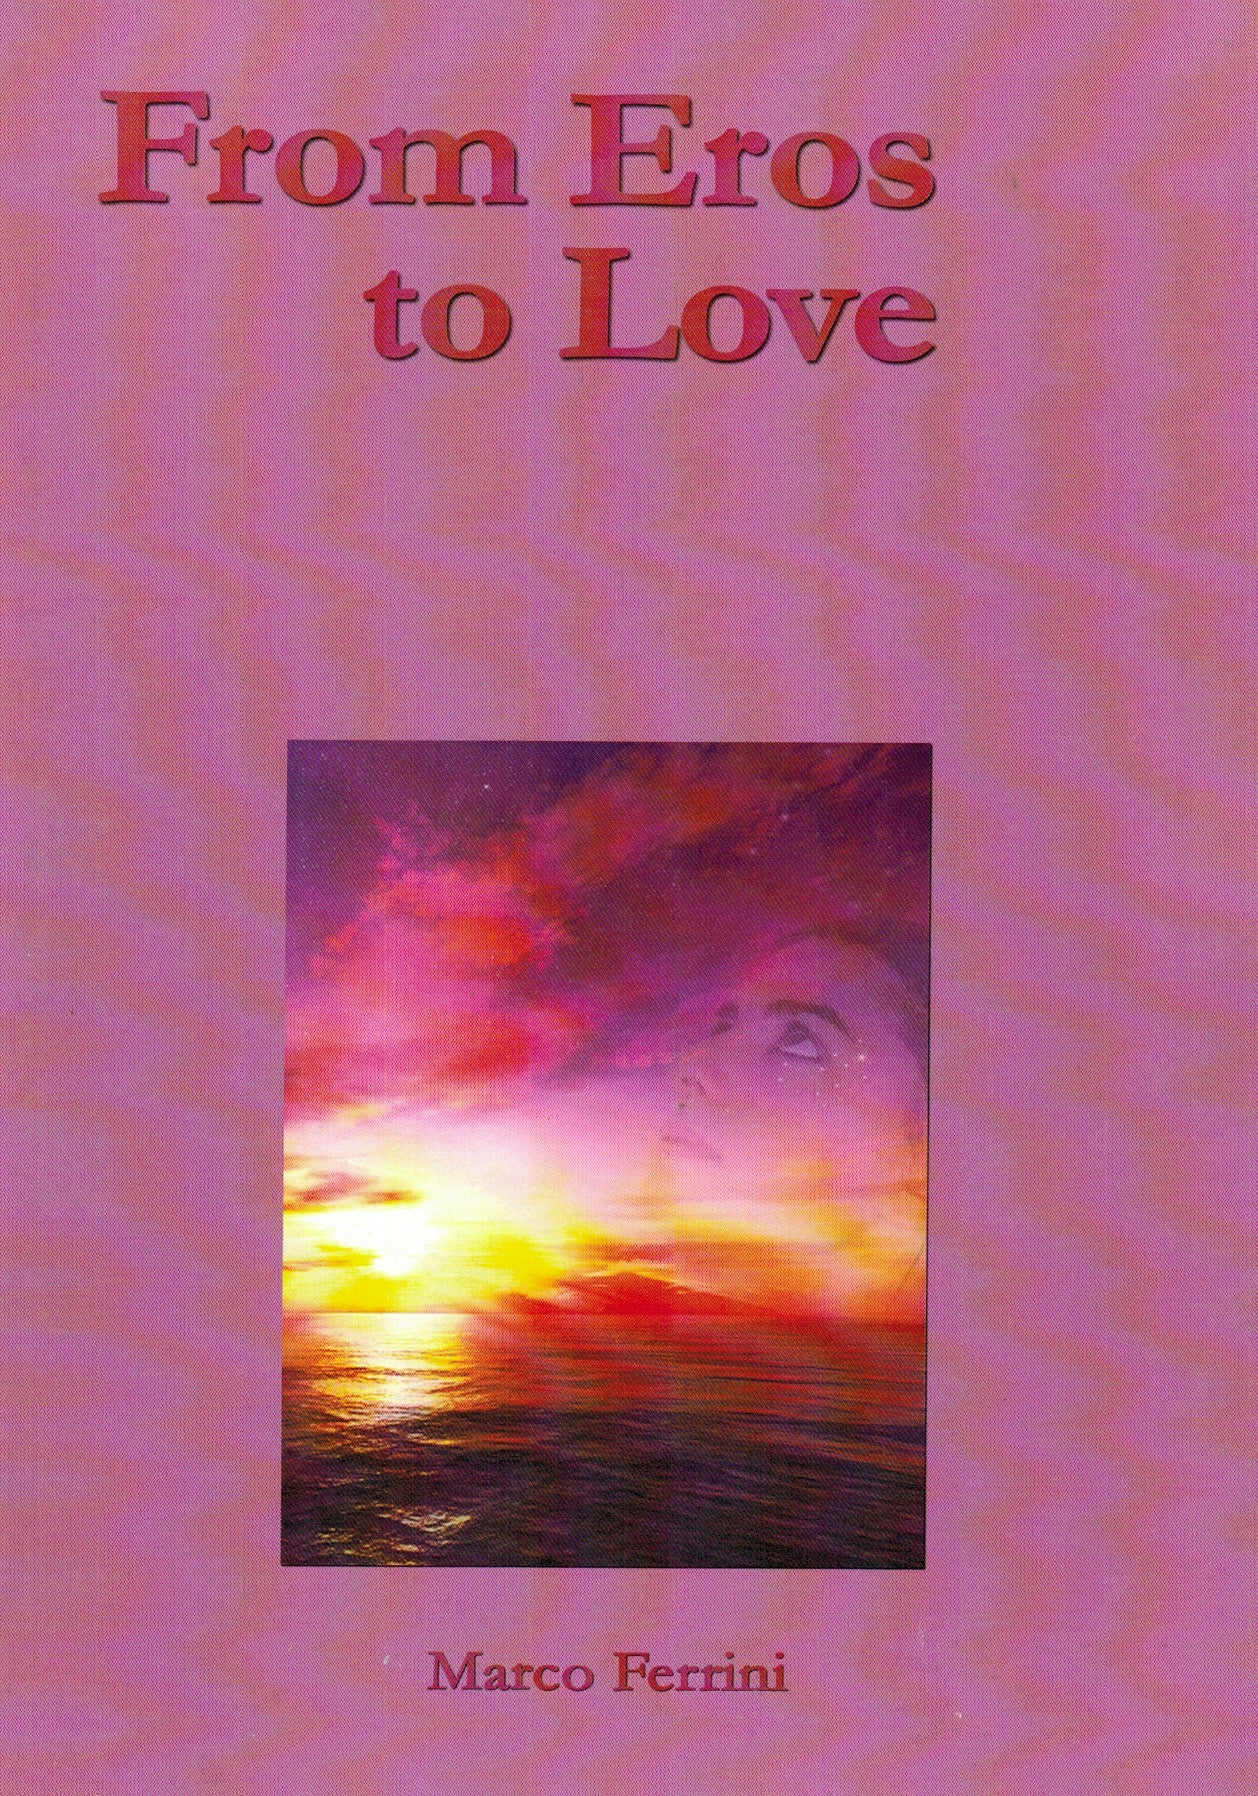 MARCO FERRINI (HG Matsyavatara Prabhu): 'From Eros to Love' Book